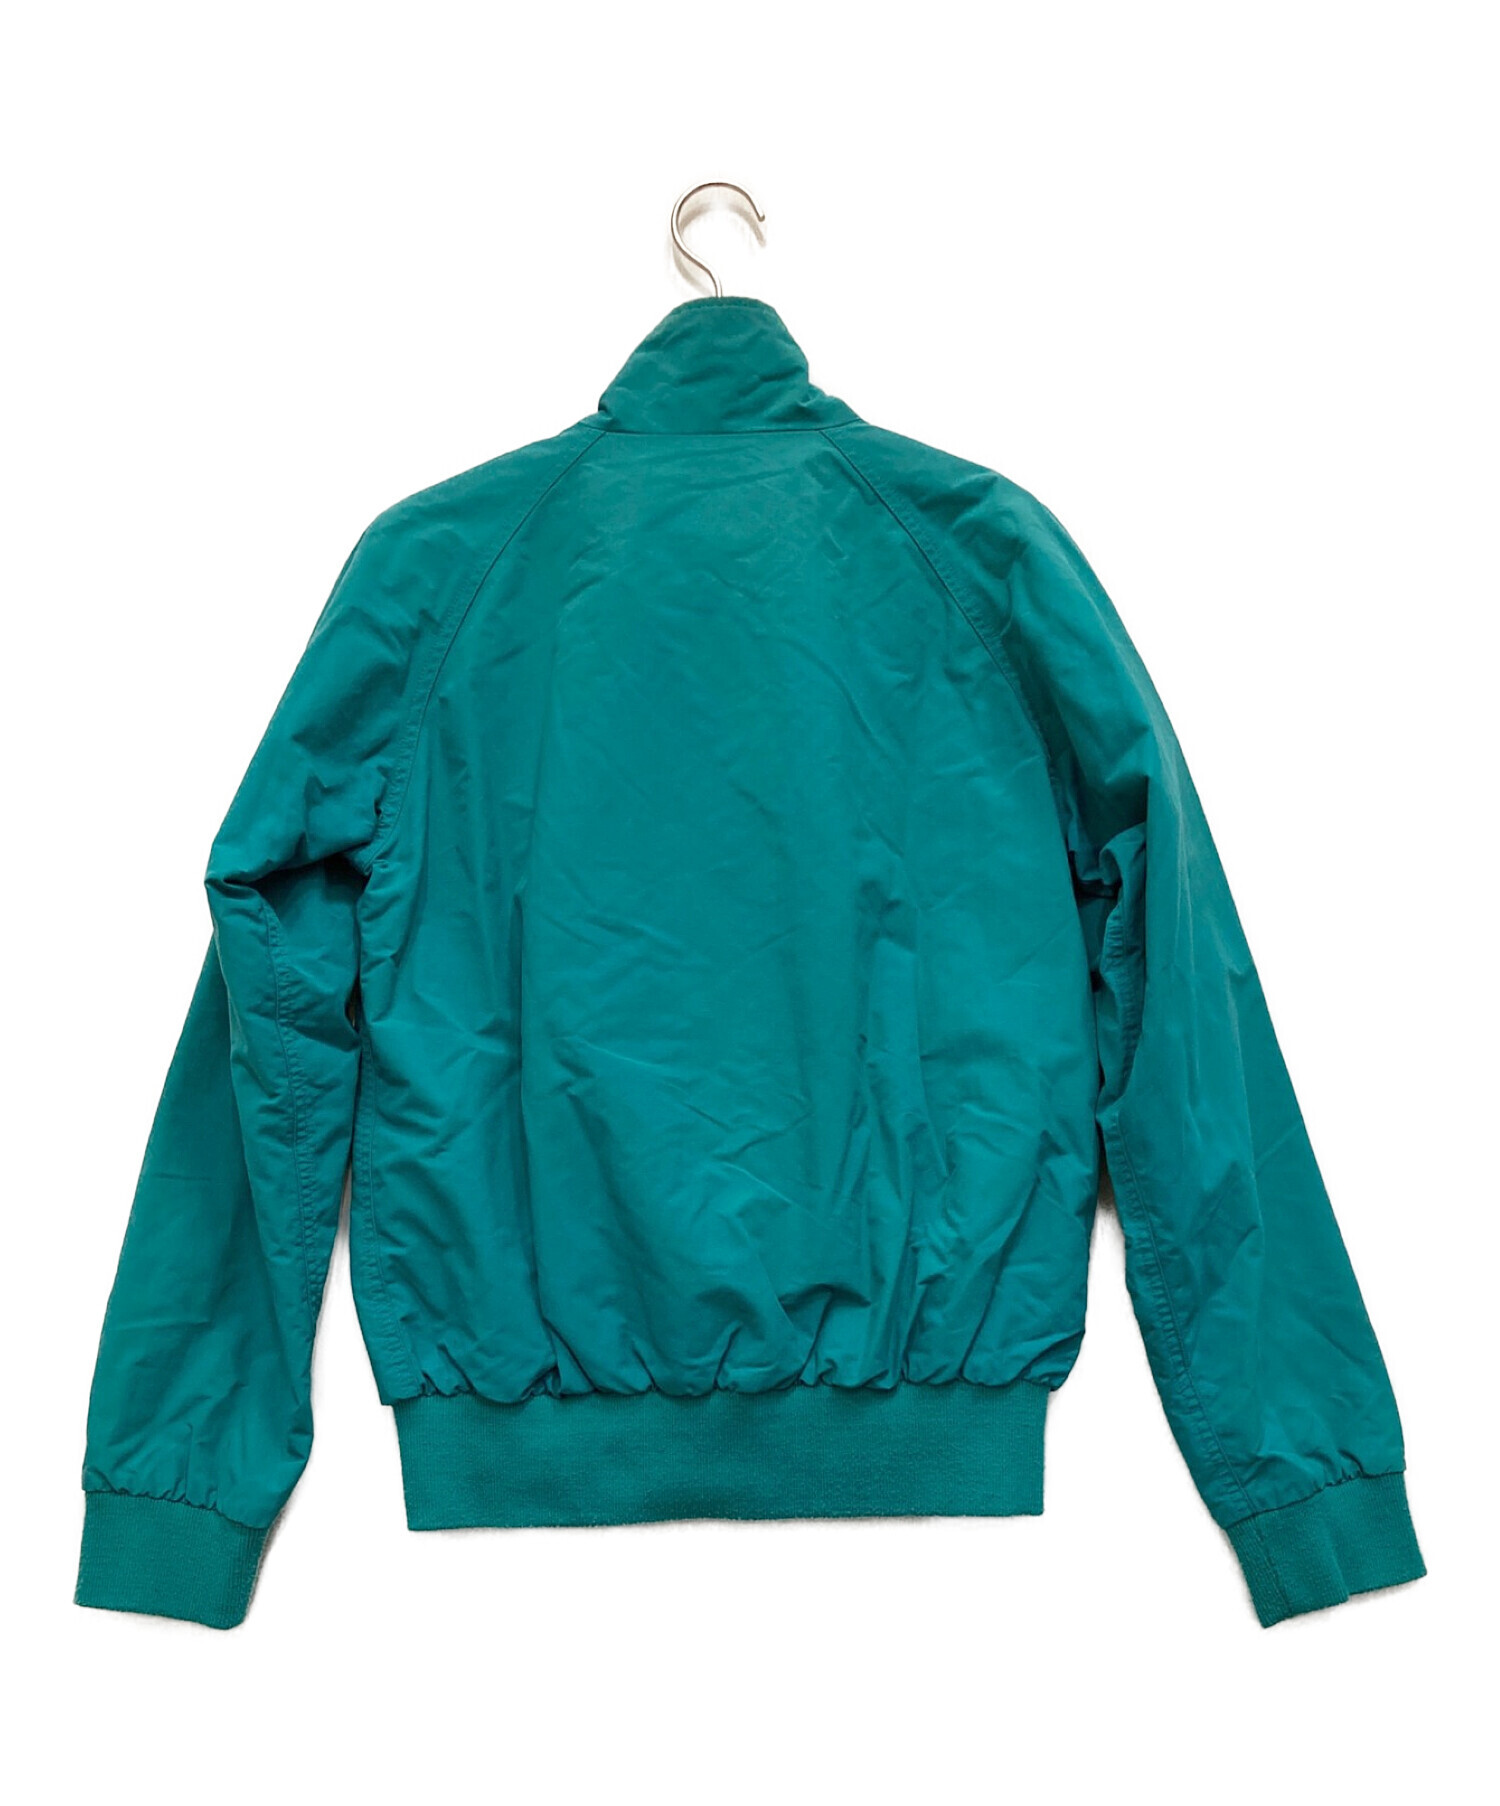 Patagonia (パタゴニア) バギーズジャケット グリーン サイズ:XS